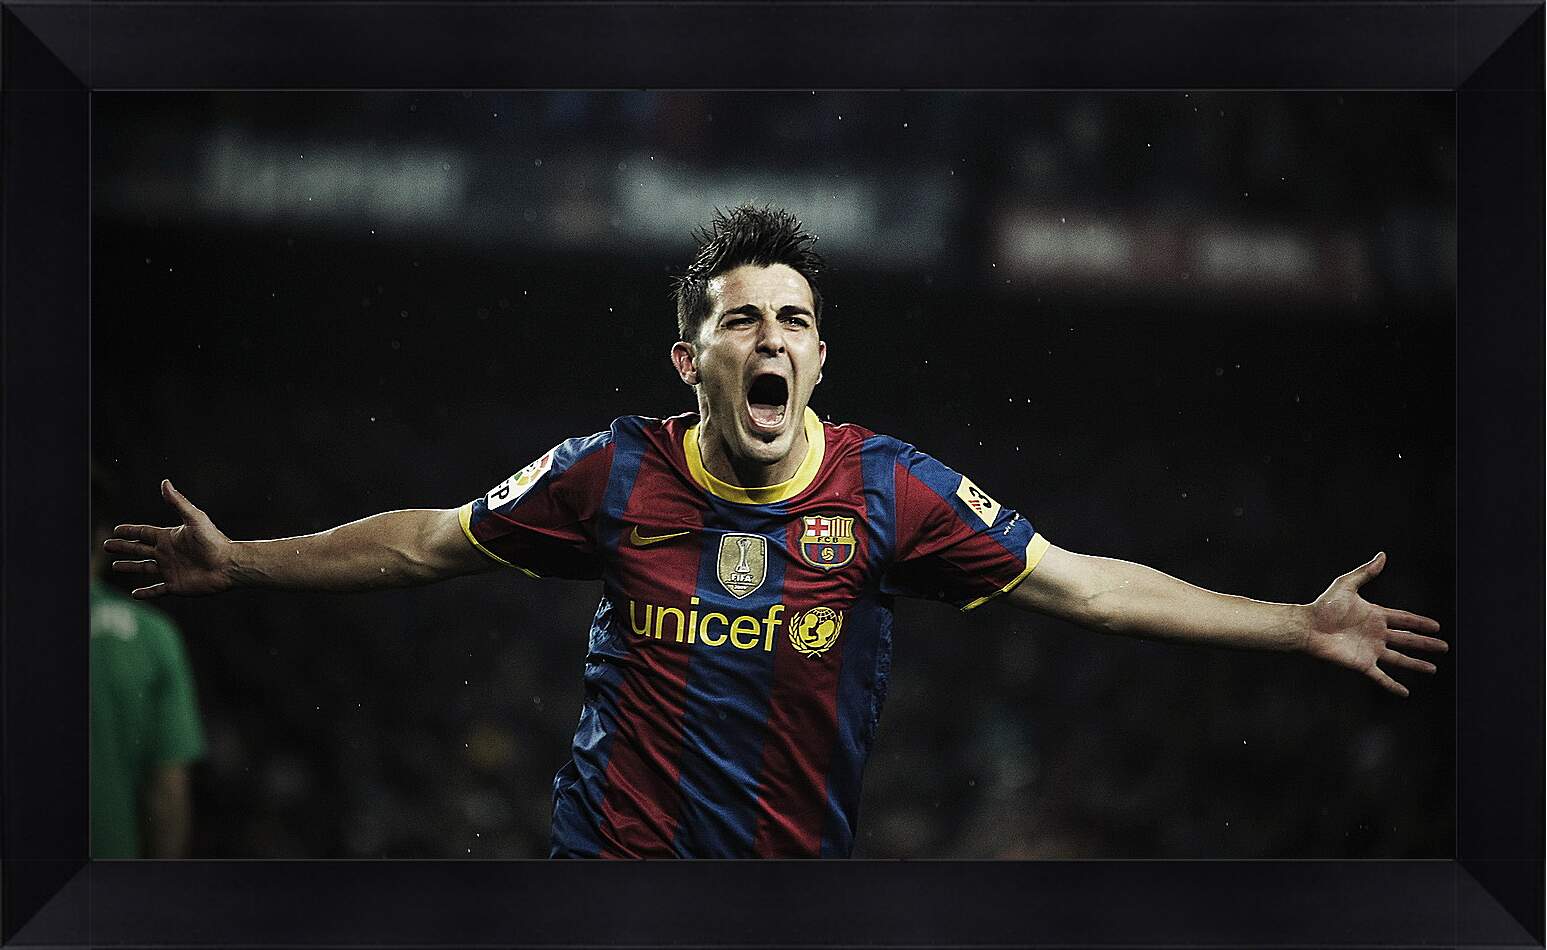 Картина в раме - Футболист Барселоны